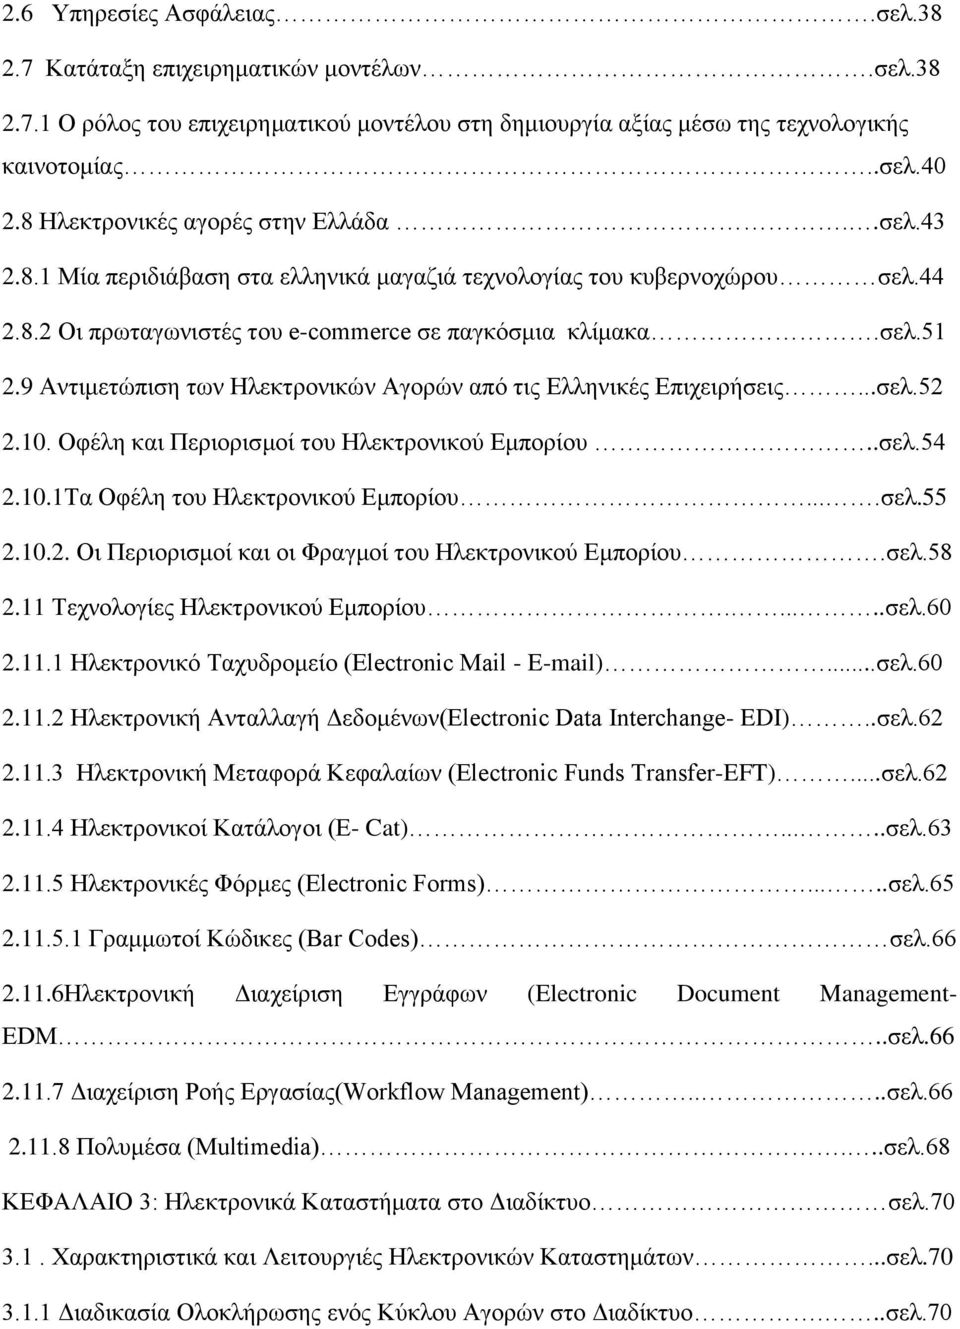 9 Αντιμετώπιση των Ηλεκτρονικών Αγορών από τις Ελληνικές Επιχειρήσεις...σελ.52 2.10. Οφέλη και Περιορισμοί του Ηλεκτρονικού Εμπορίου..σελ.54 2.10.1Τα Οφέλη του Ηλεκτρονικού Εμπορίου....σελ.55 2.10.2. Οι Περιορισμοί και οι Φραγμοί του Ηλεκτρονικού Εμπορίου.